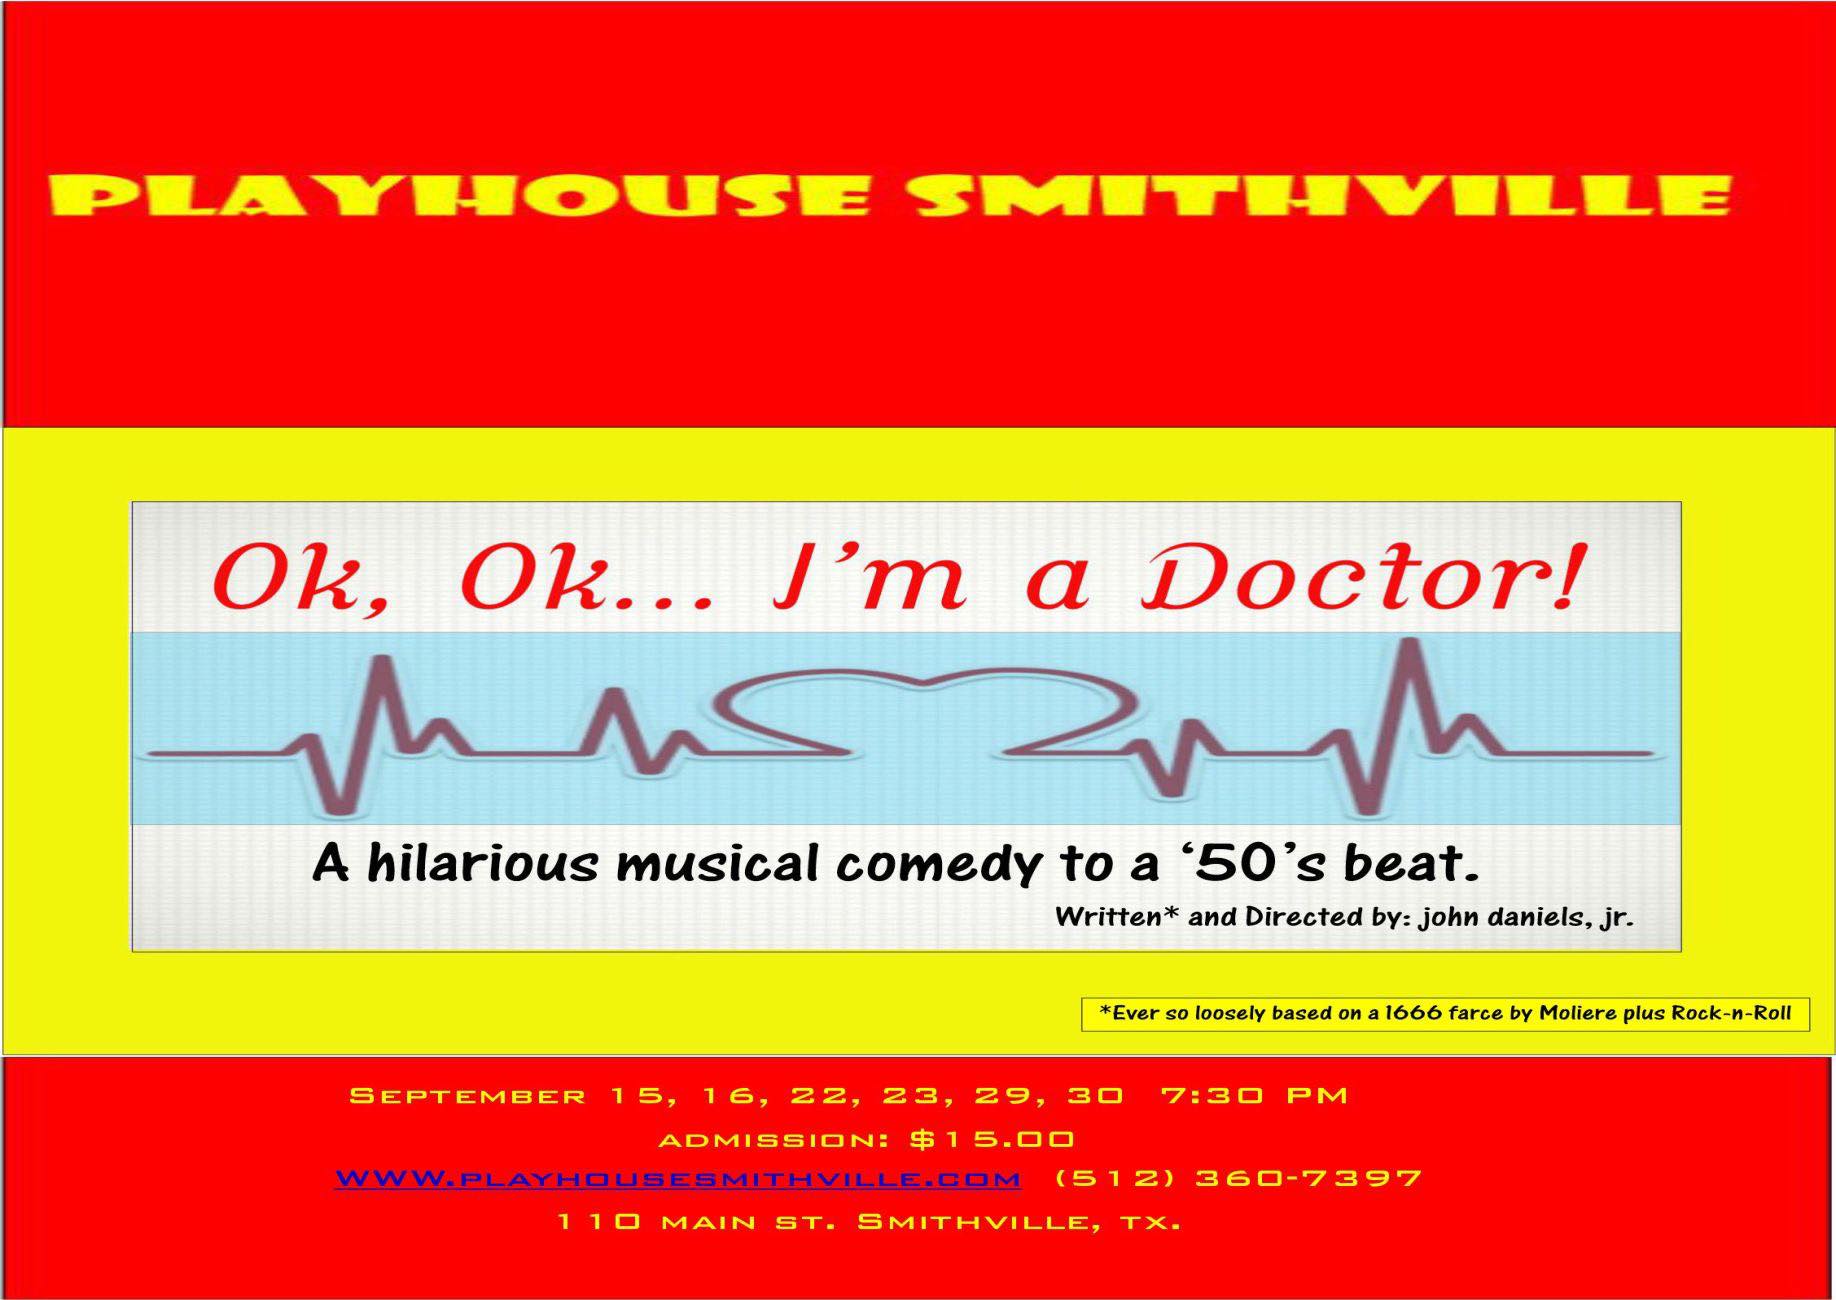 OK, OK, I'm a Doctor! by Playhouse Smithville